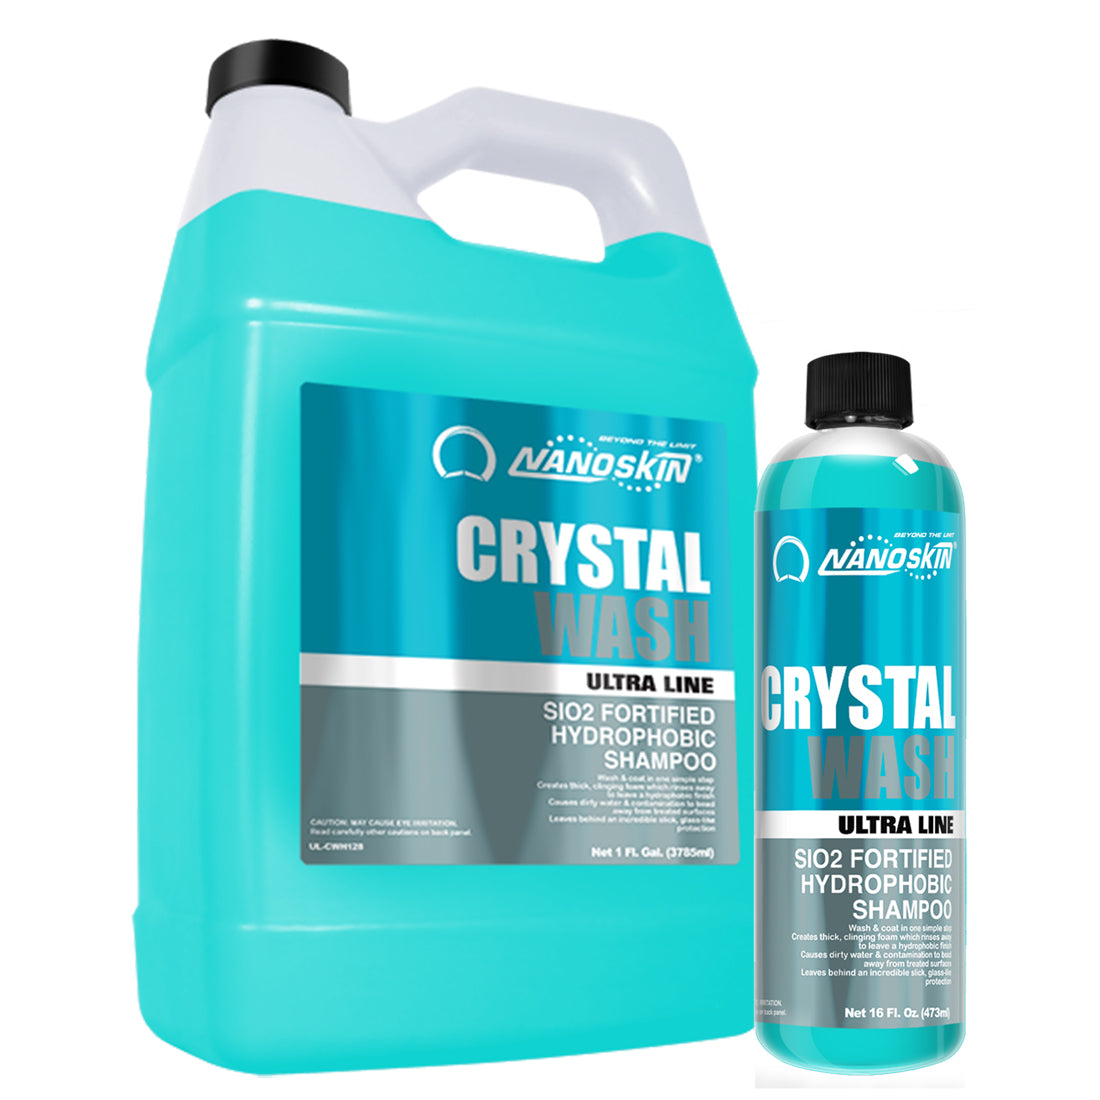 CRYSTAL WASH SiO2 Fortified Hydrophobic Shampoo 200:1 ~ 400:1